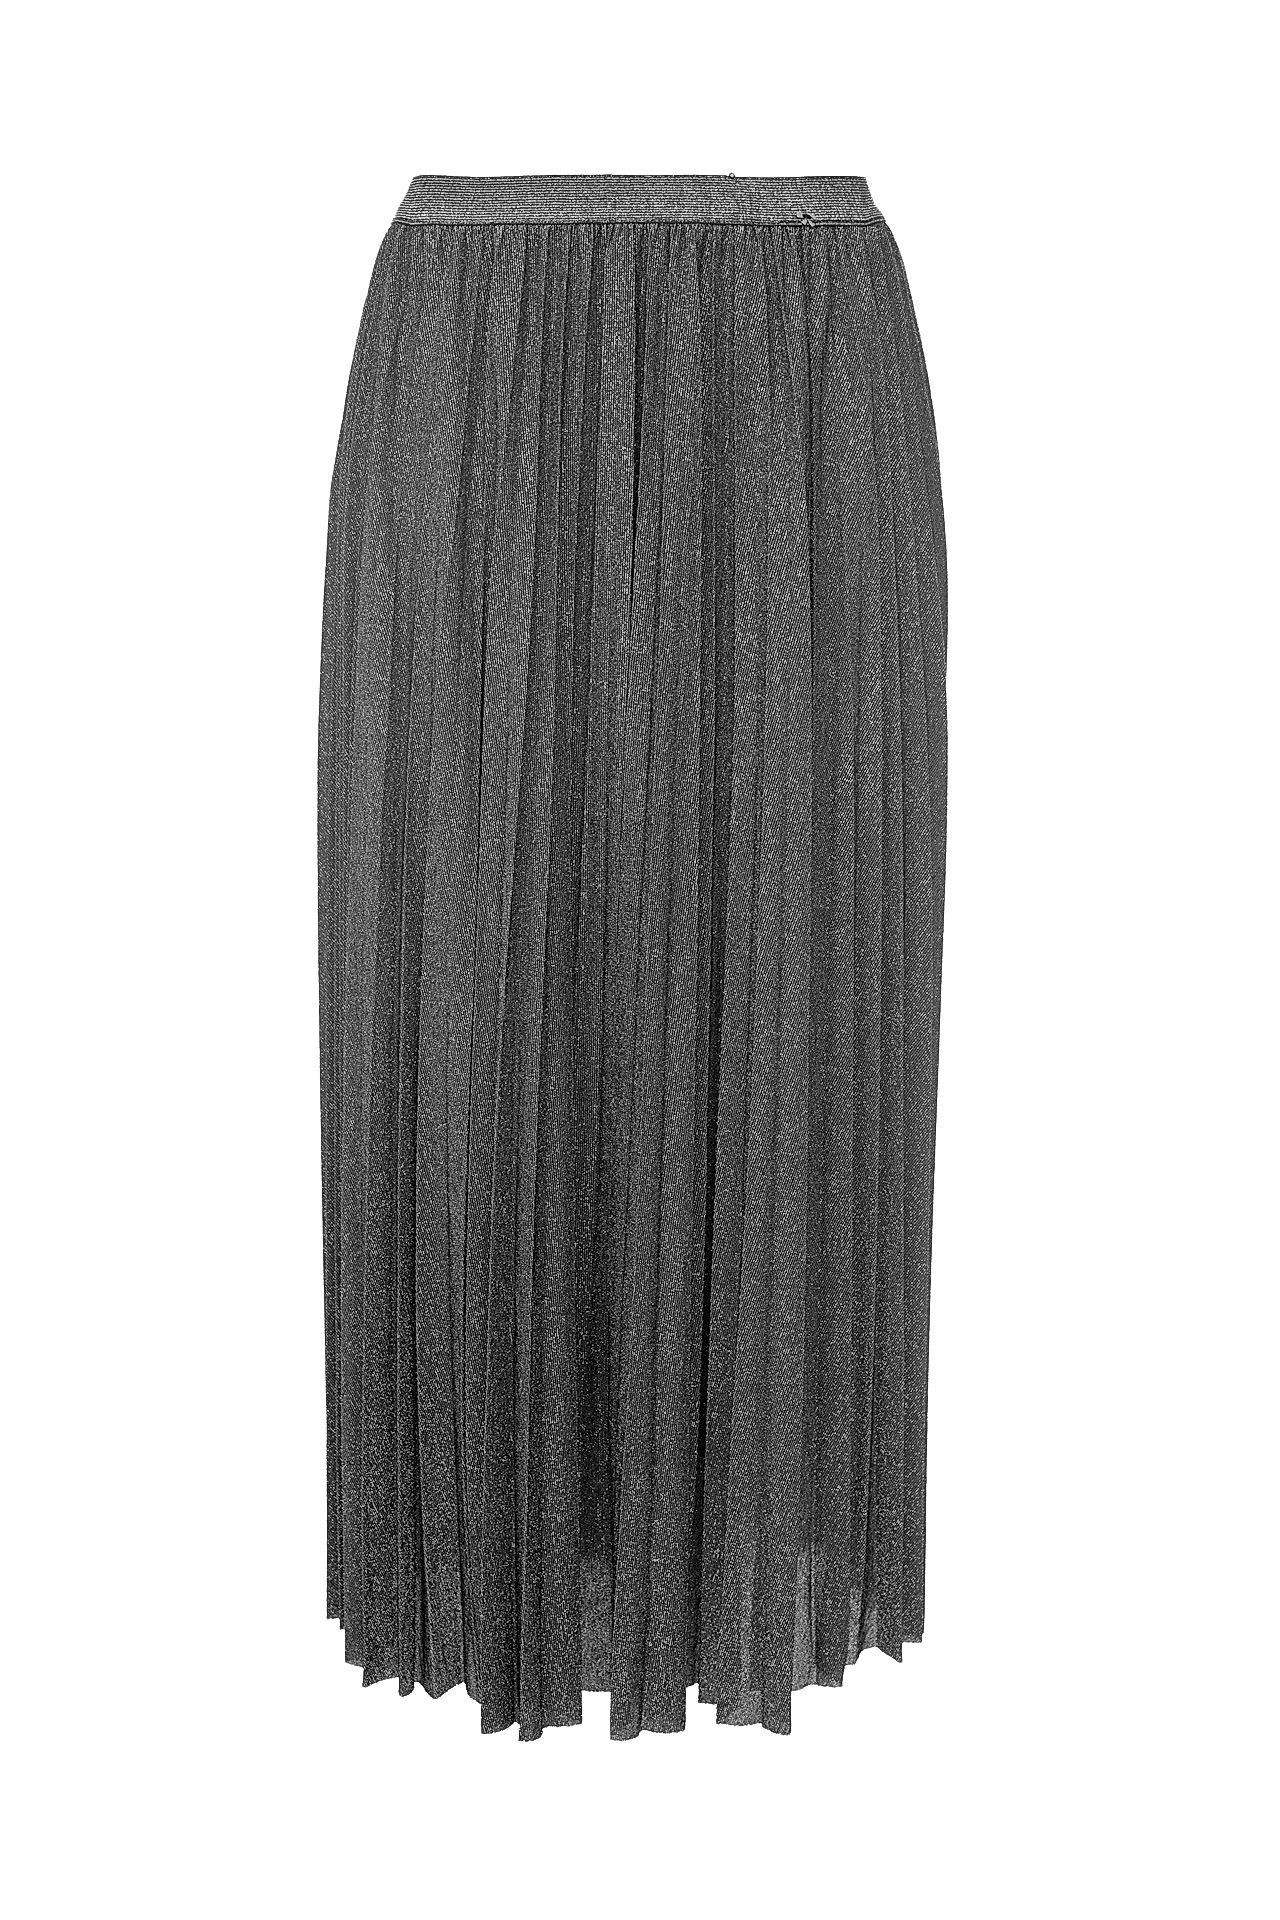 Одежда женская Юбка IMPERIAL (G9990096C/17.2). Купить за 8500 руб.